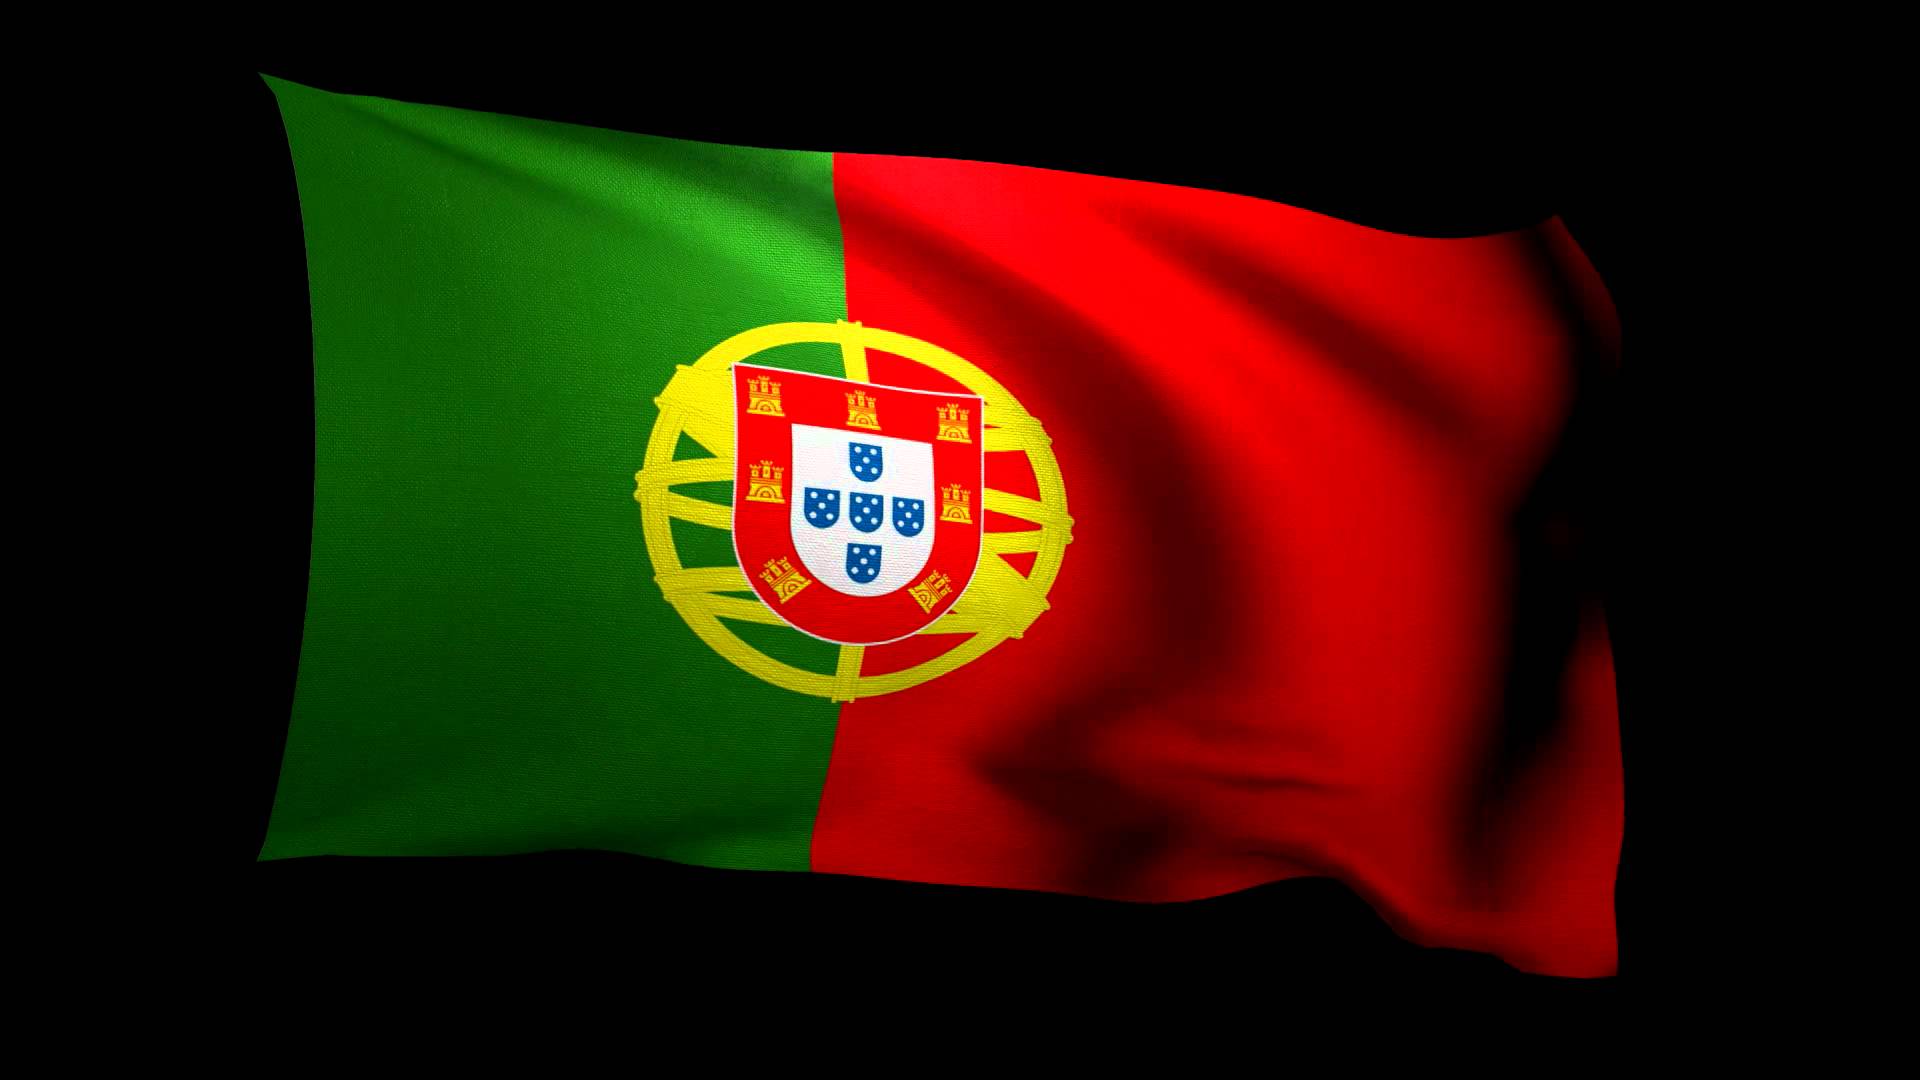 1500x1000px Portugal Flag (377.37 KB).03.2015